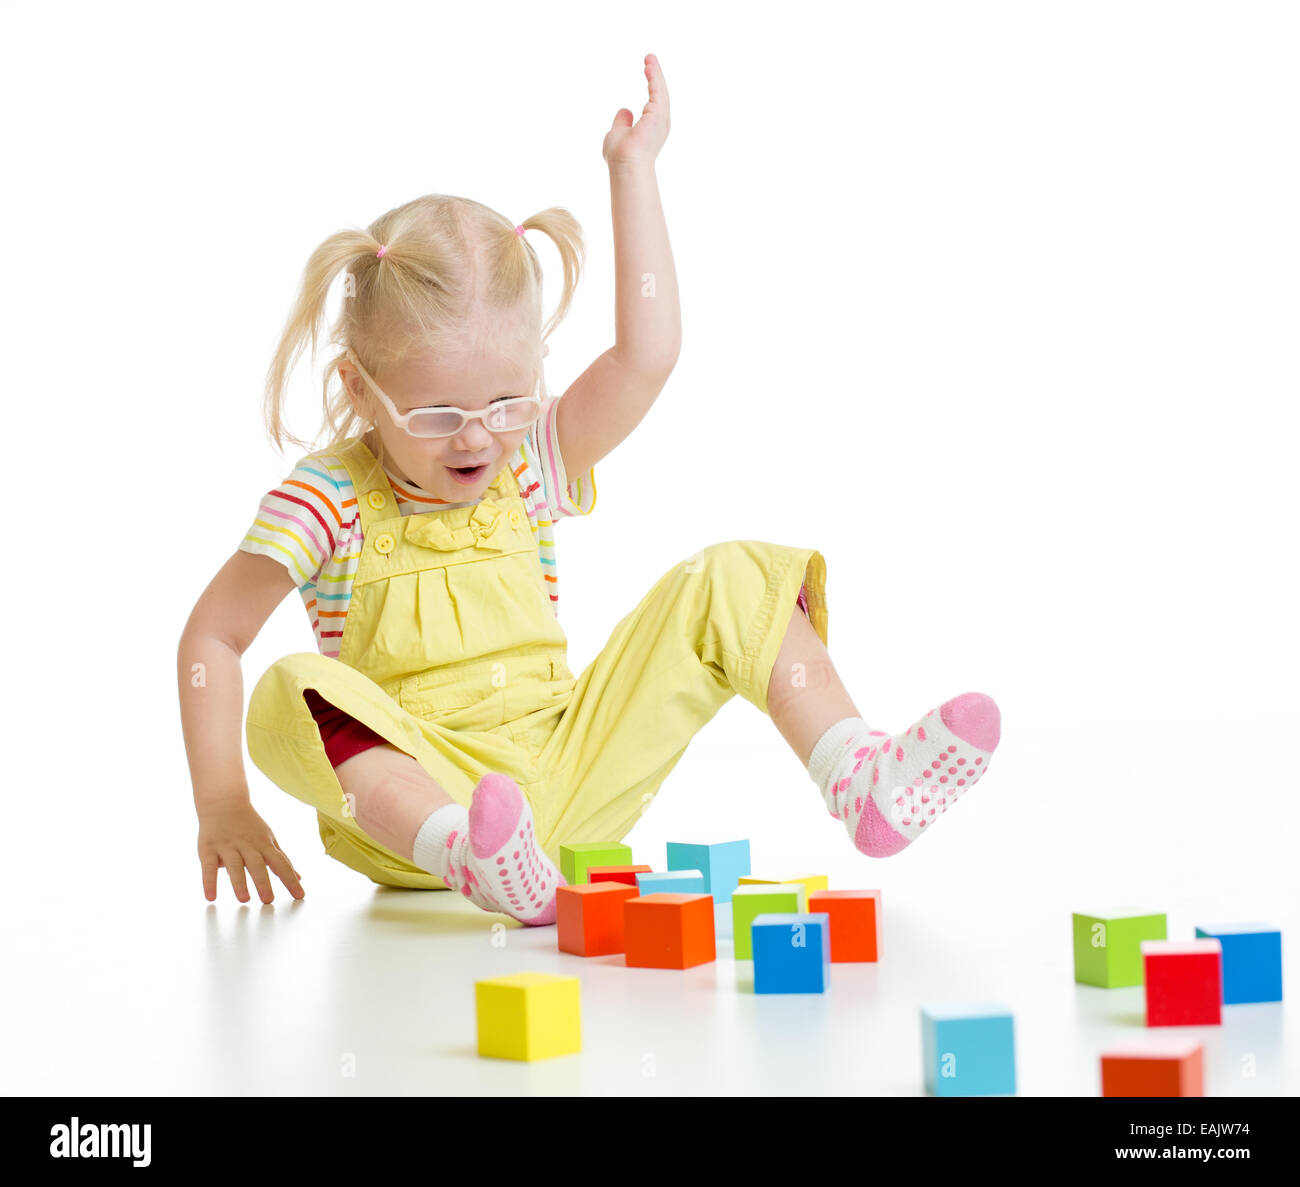 Funny bambino in eyeglases giocando colorati blocchi di edificio isolato Foto Stock